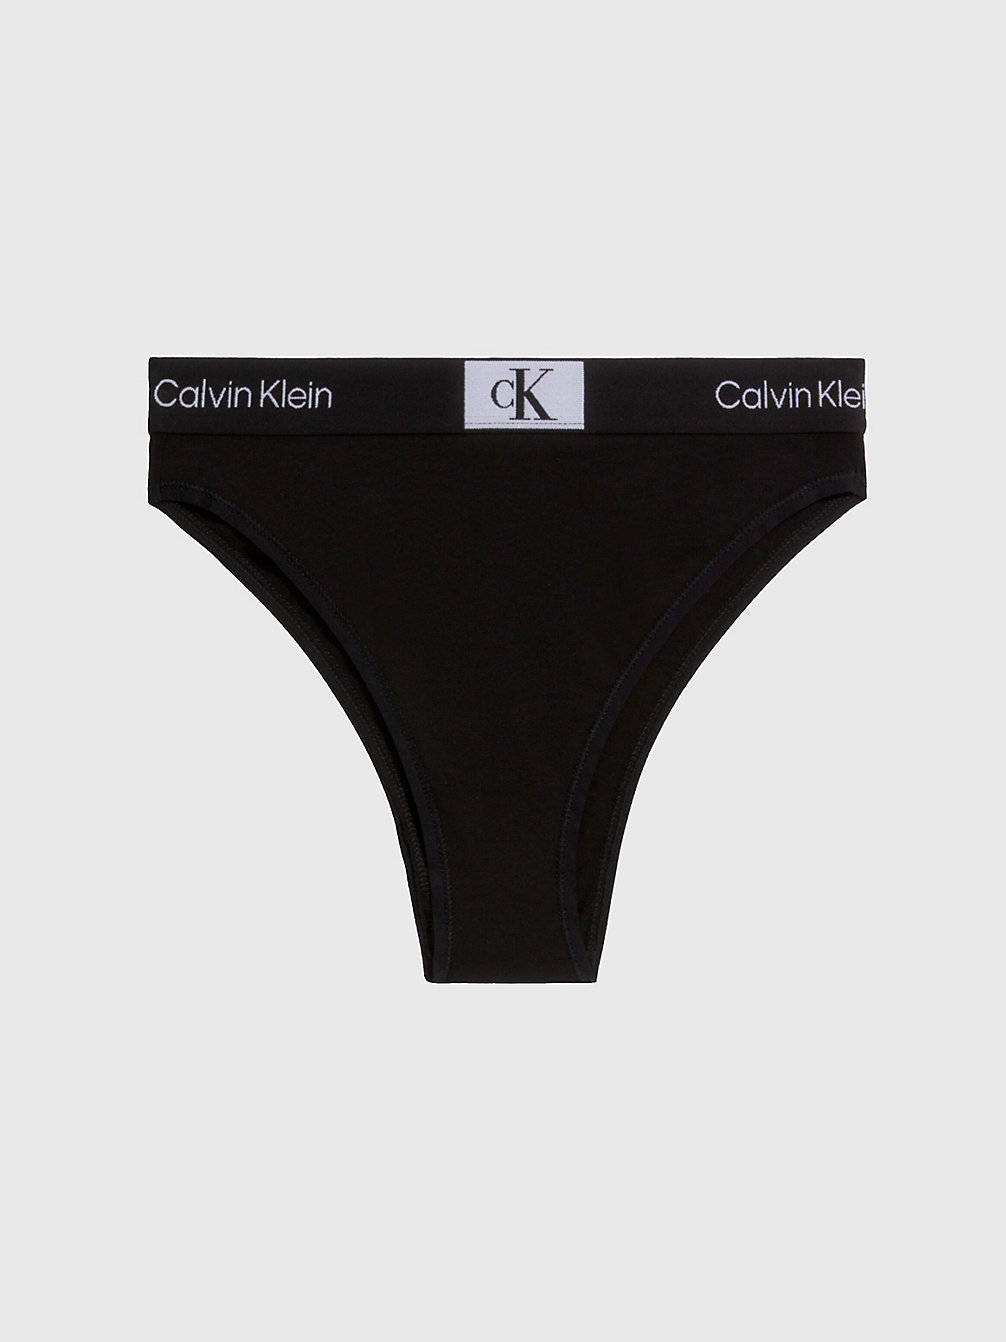 Culotte Brésilienne Taille Haute - Ck96 > BLACK > undefined femmes > Calvin Klein